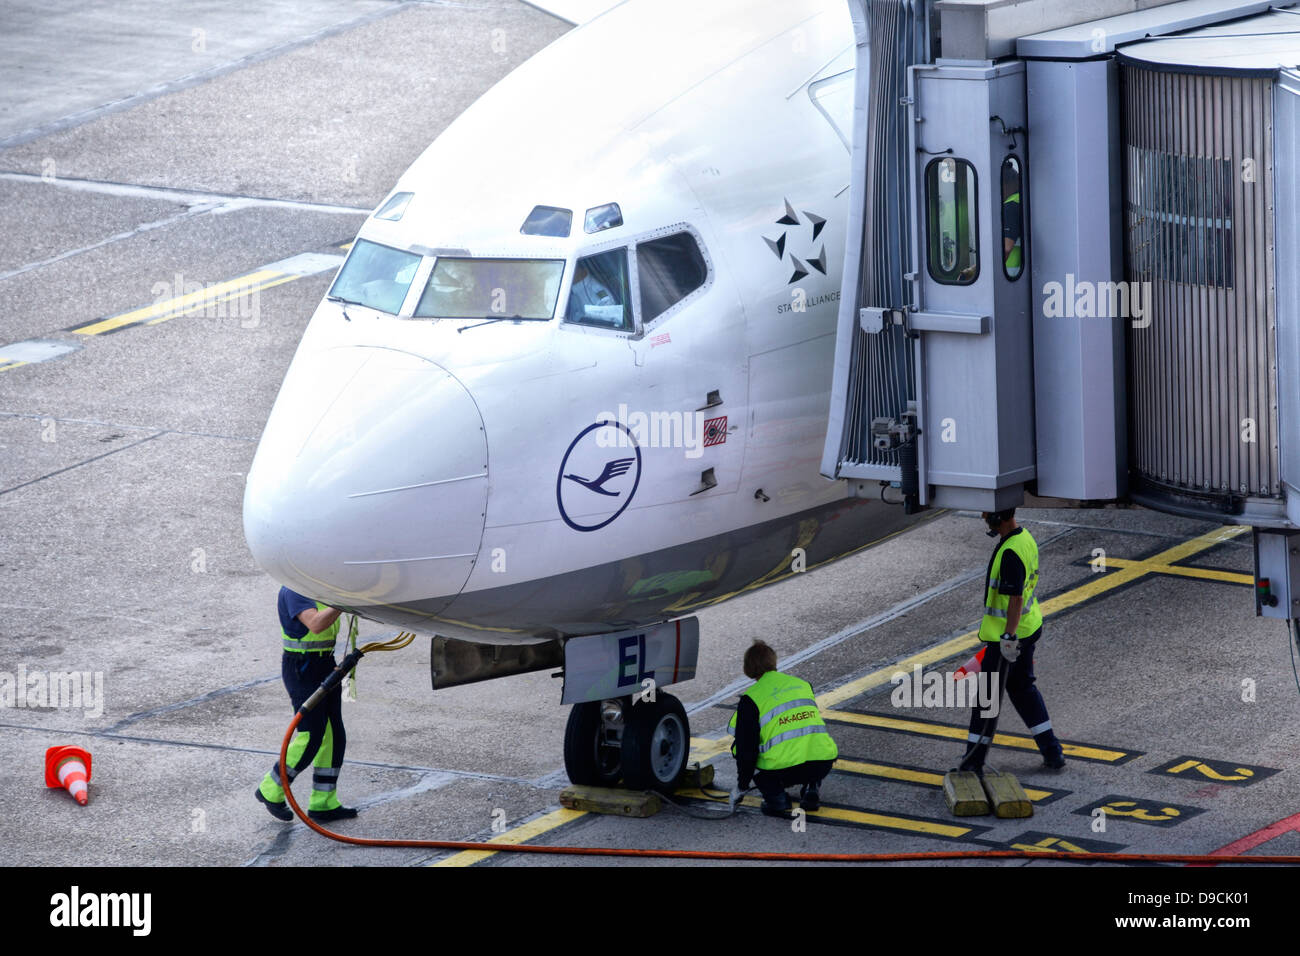 Jet de Lufthansa por el despacho en el aeropuerto de Hamburgo Foto de stock